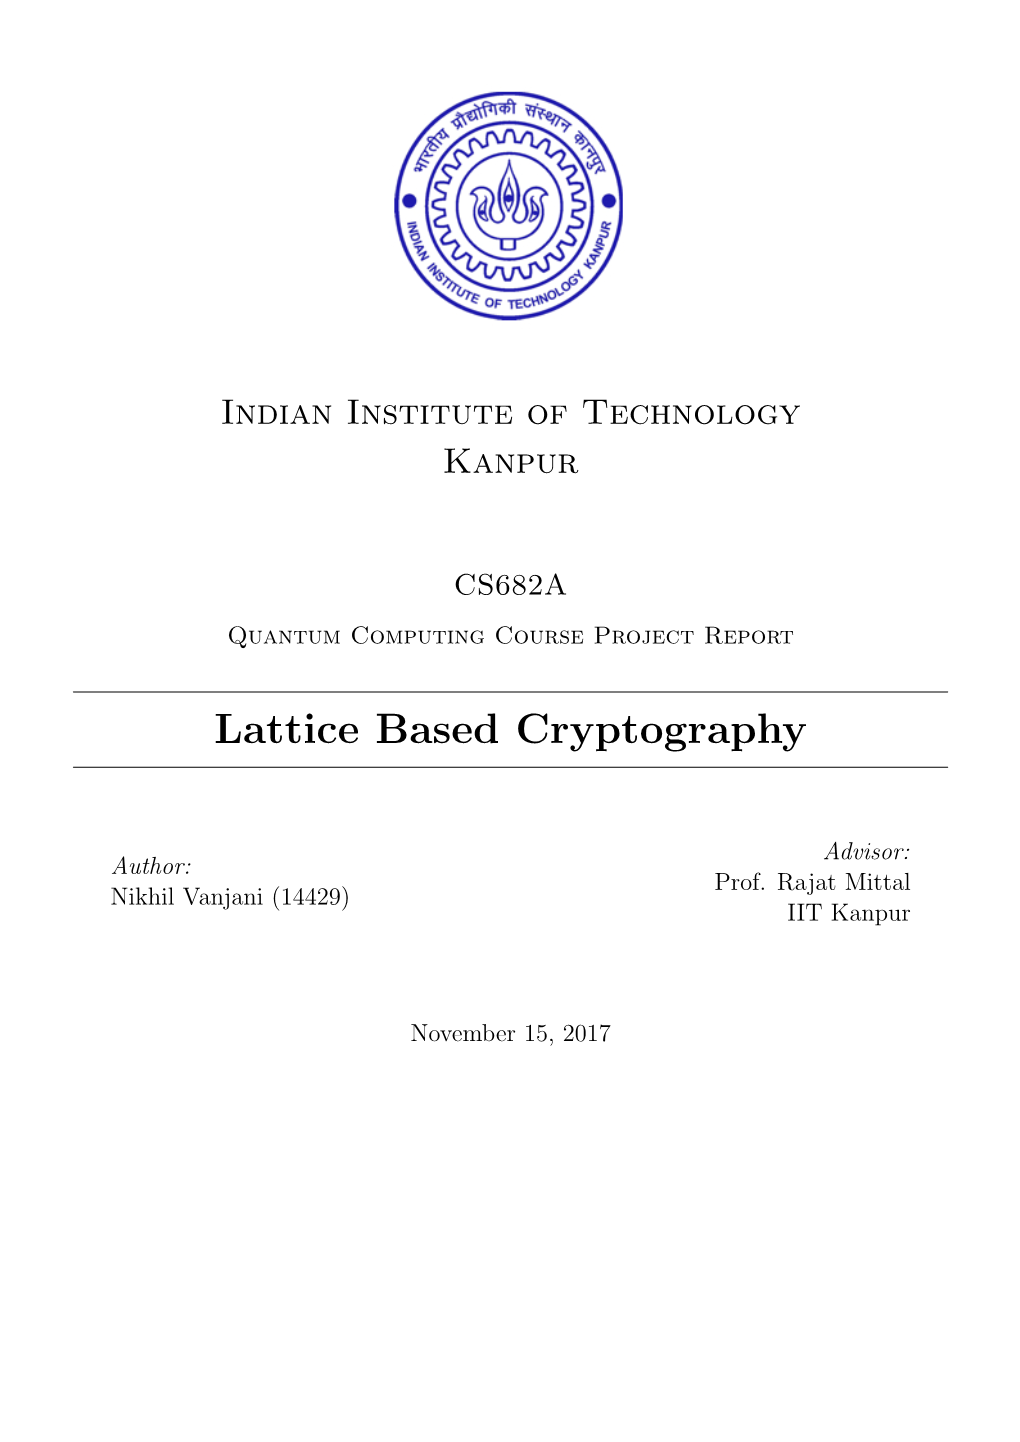 Lattice Based Cryptography